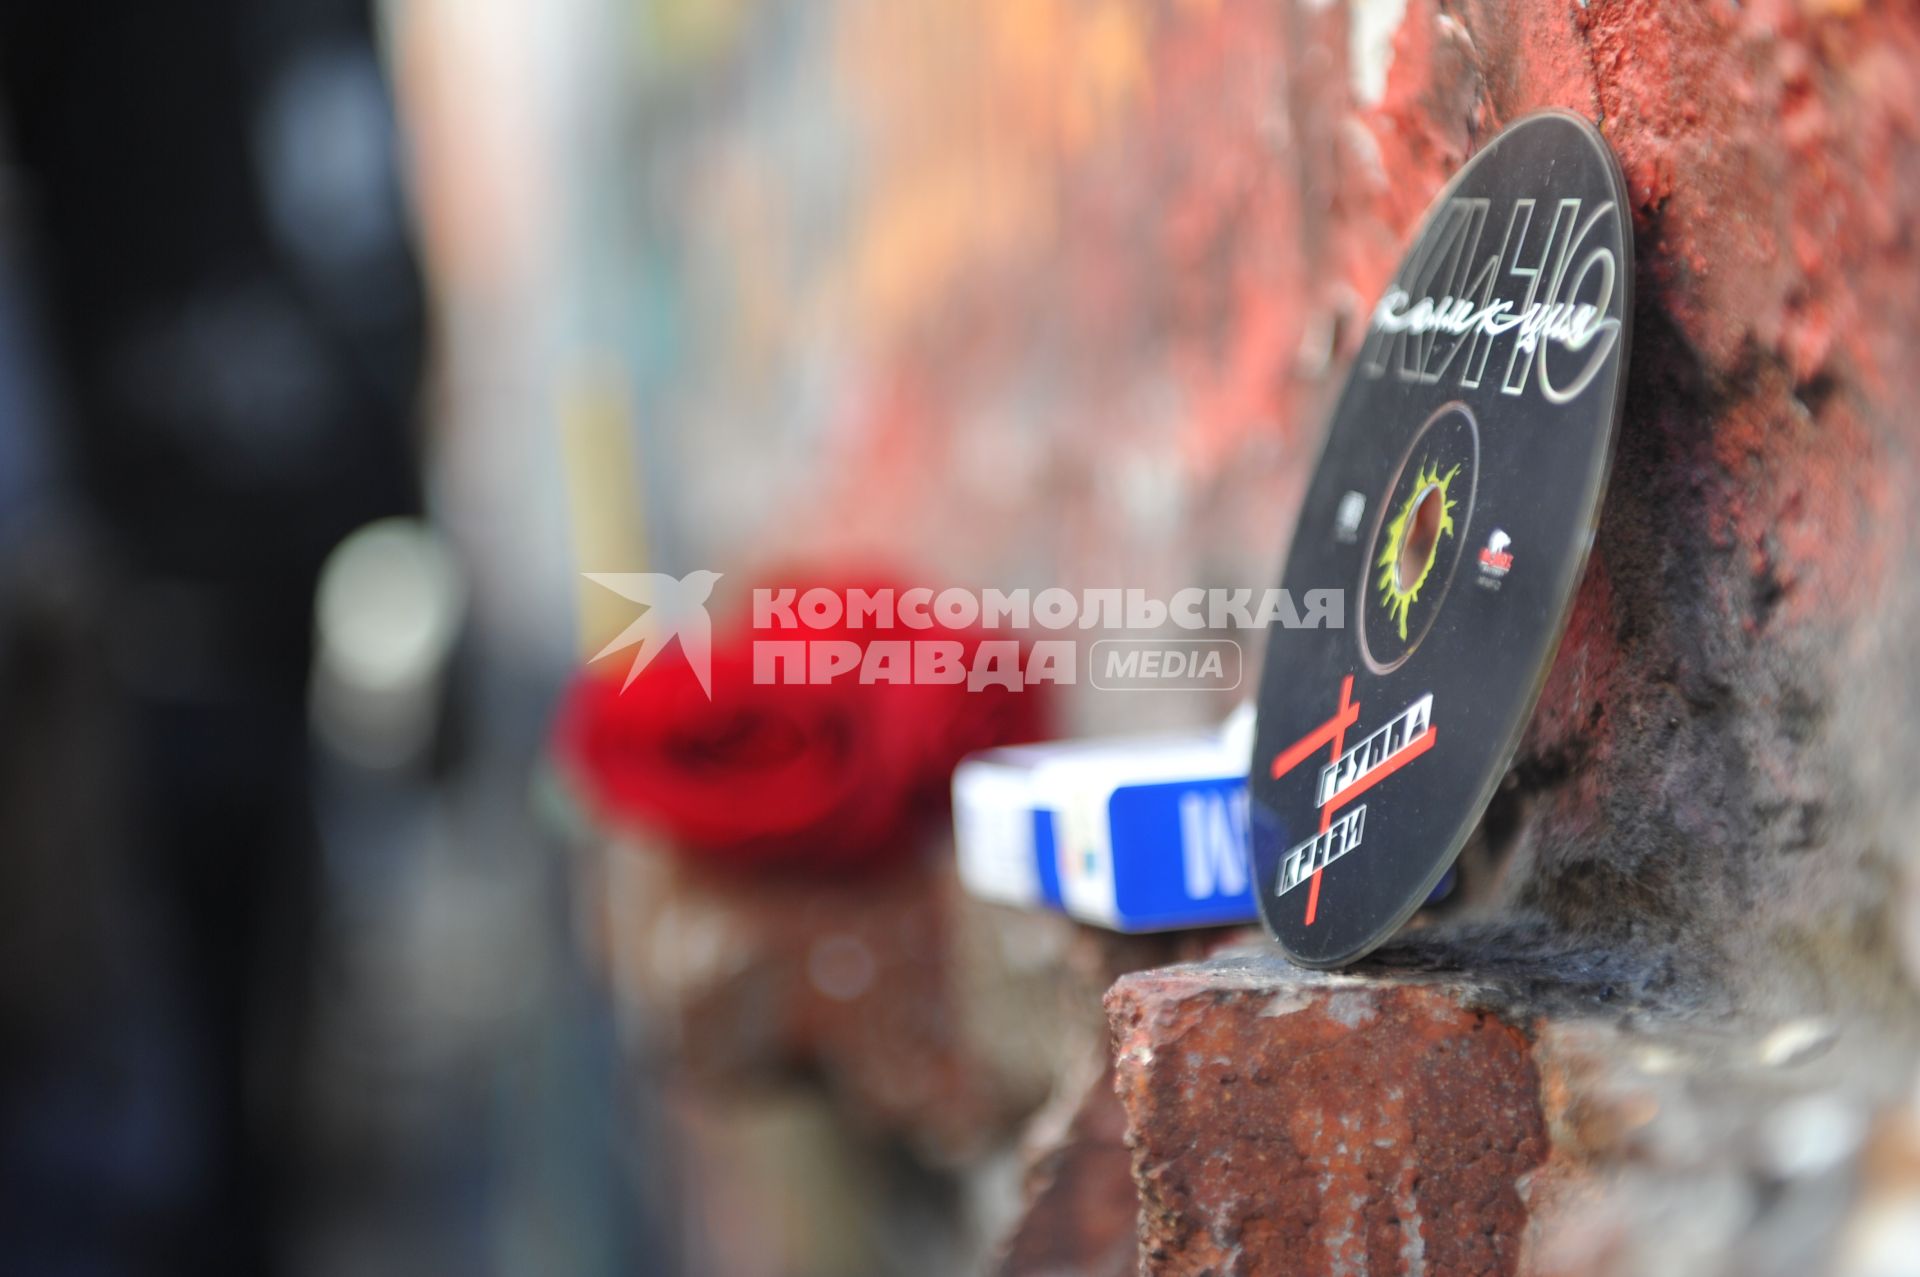 Арбат. На снимке: CD-диск группы `Кино`у памятной стены музыканта Виктора Цоя.